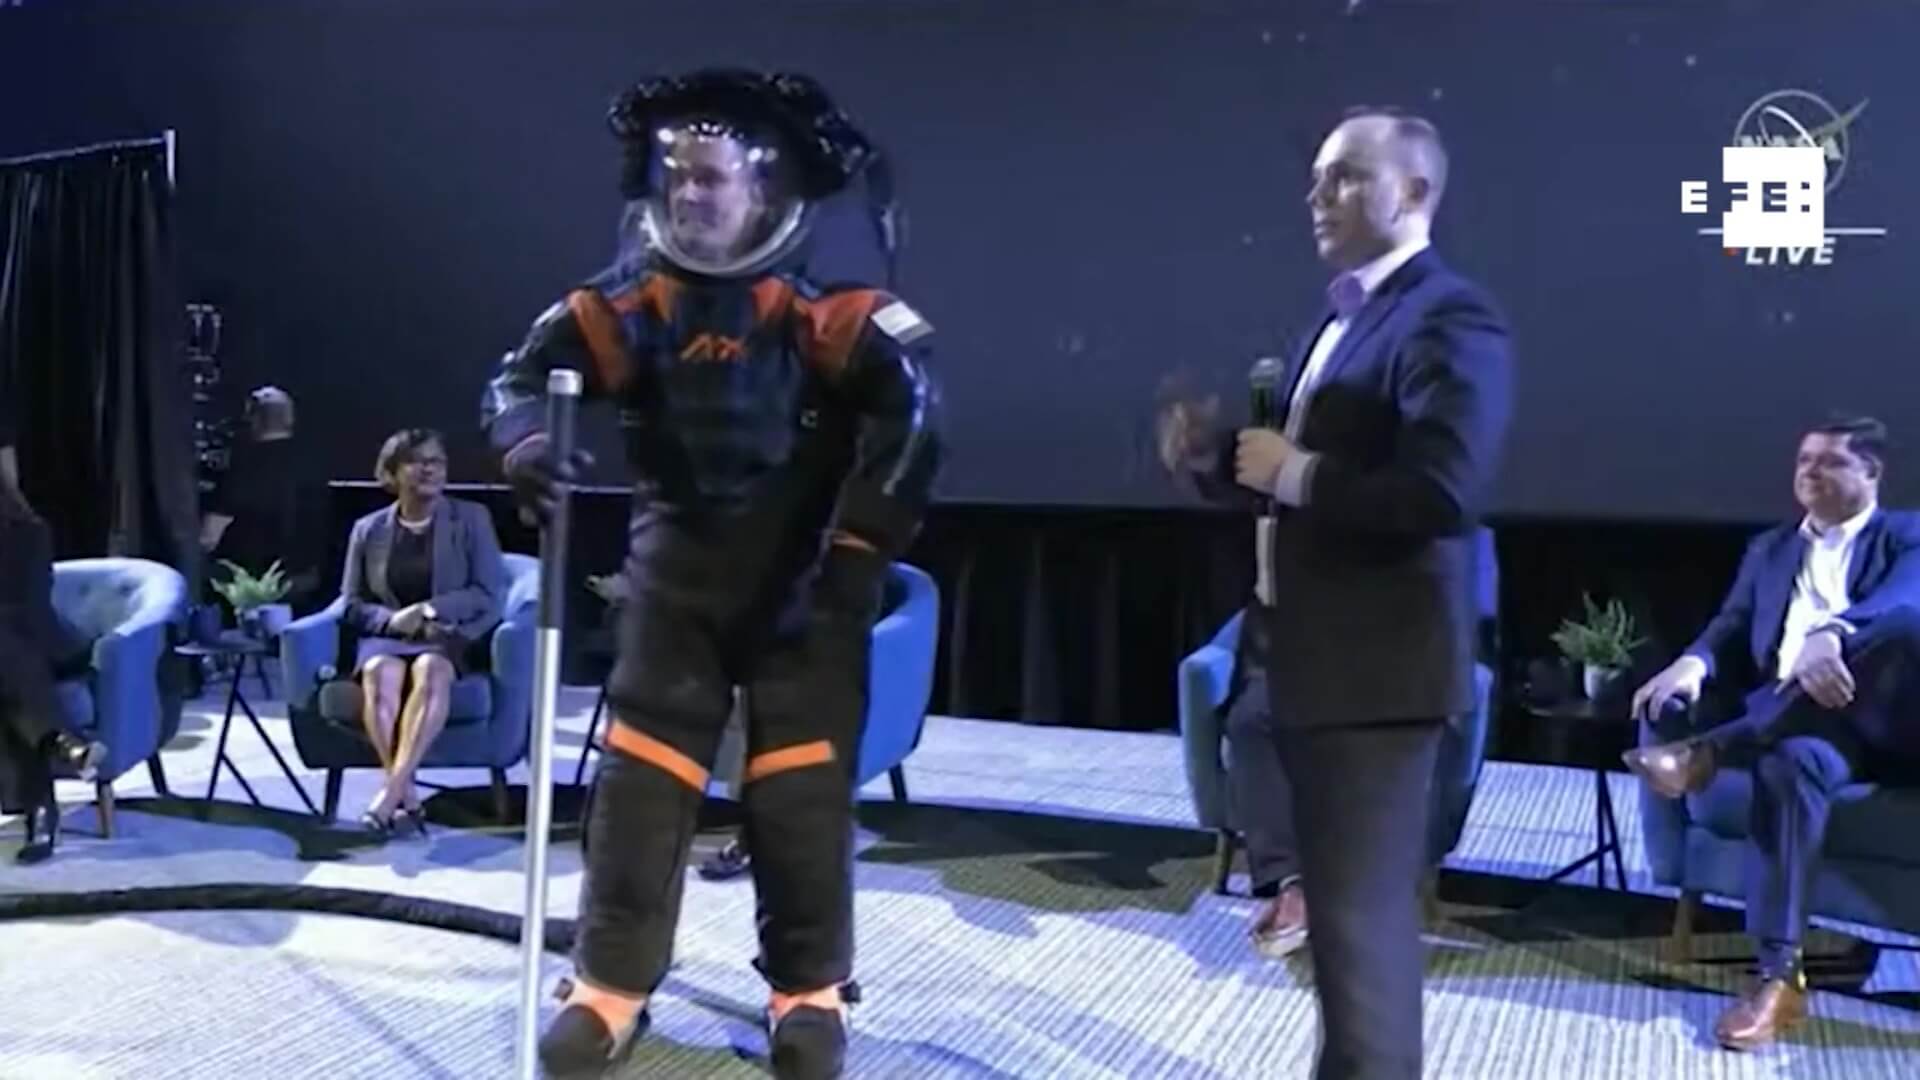 La NASA presenta trajes de astronautas para Artemis III